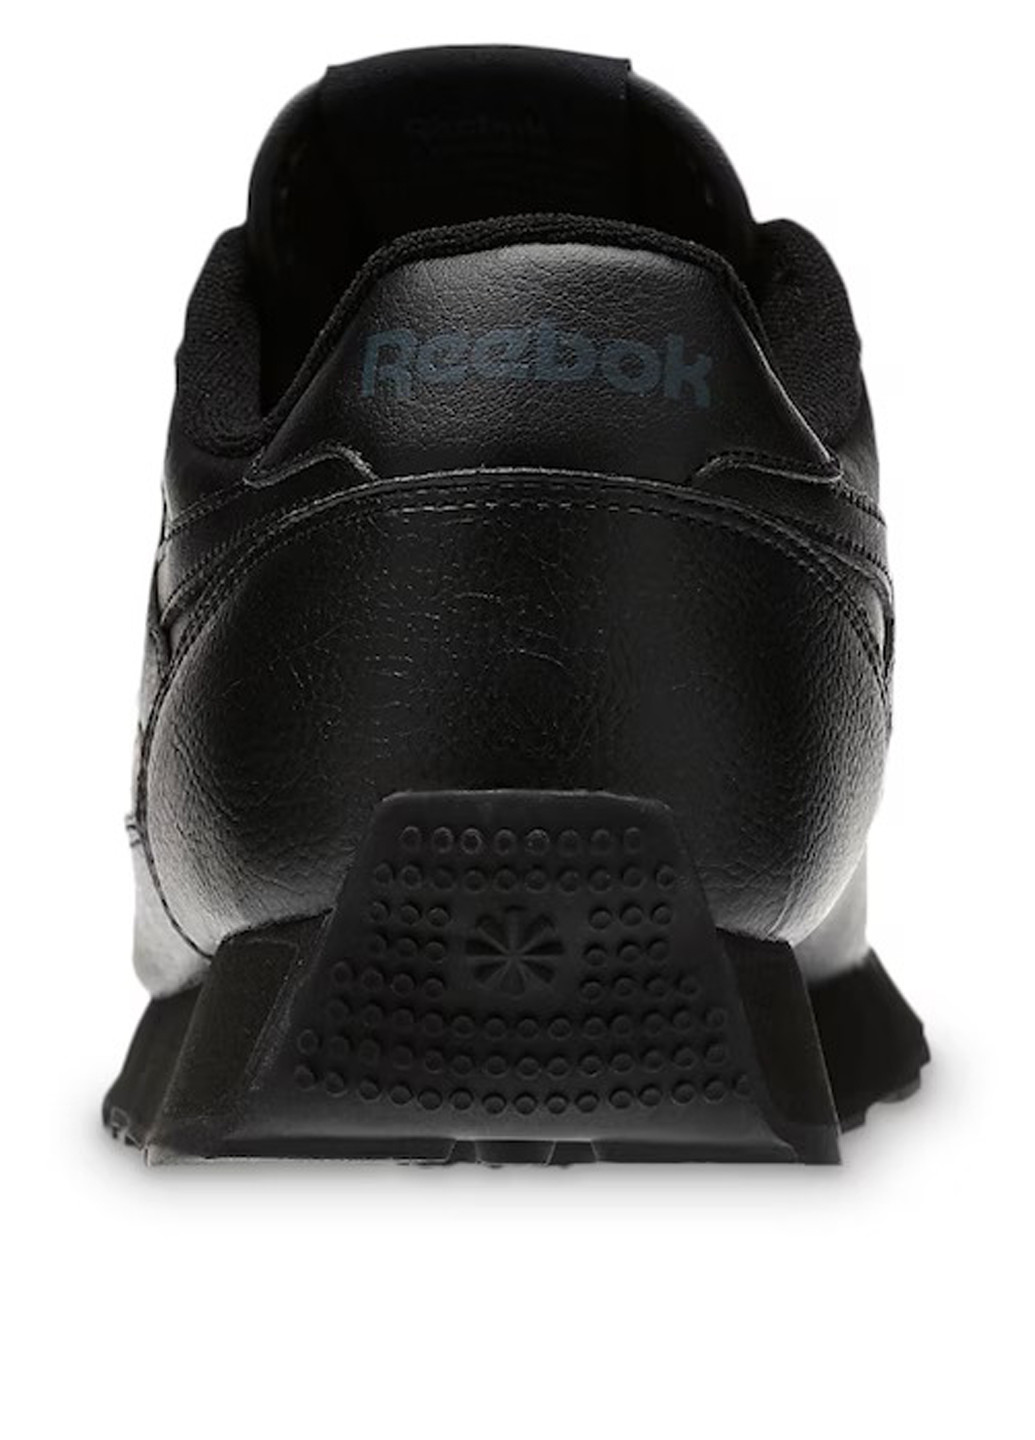 Черные всесезонные кроссовки Reebok